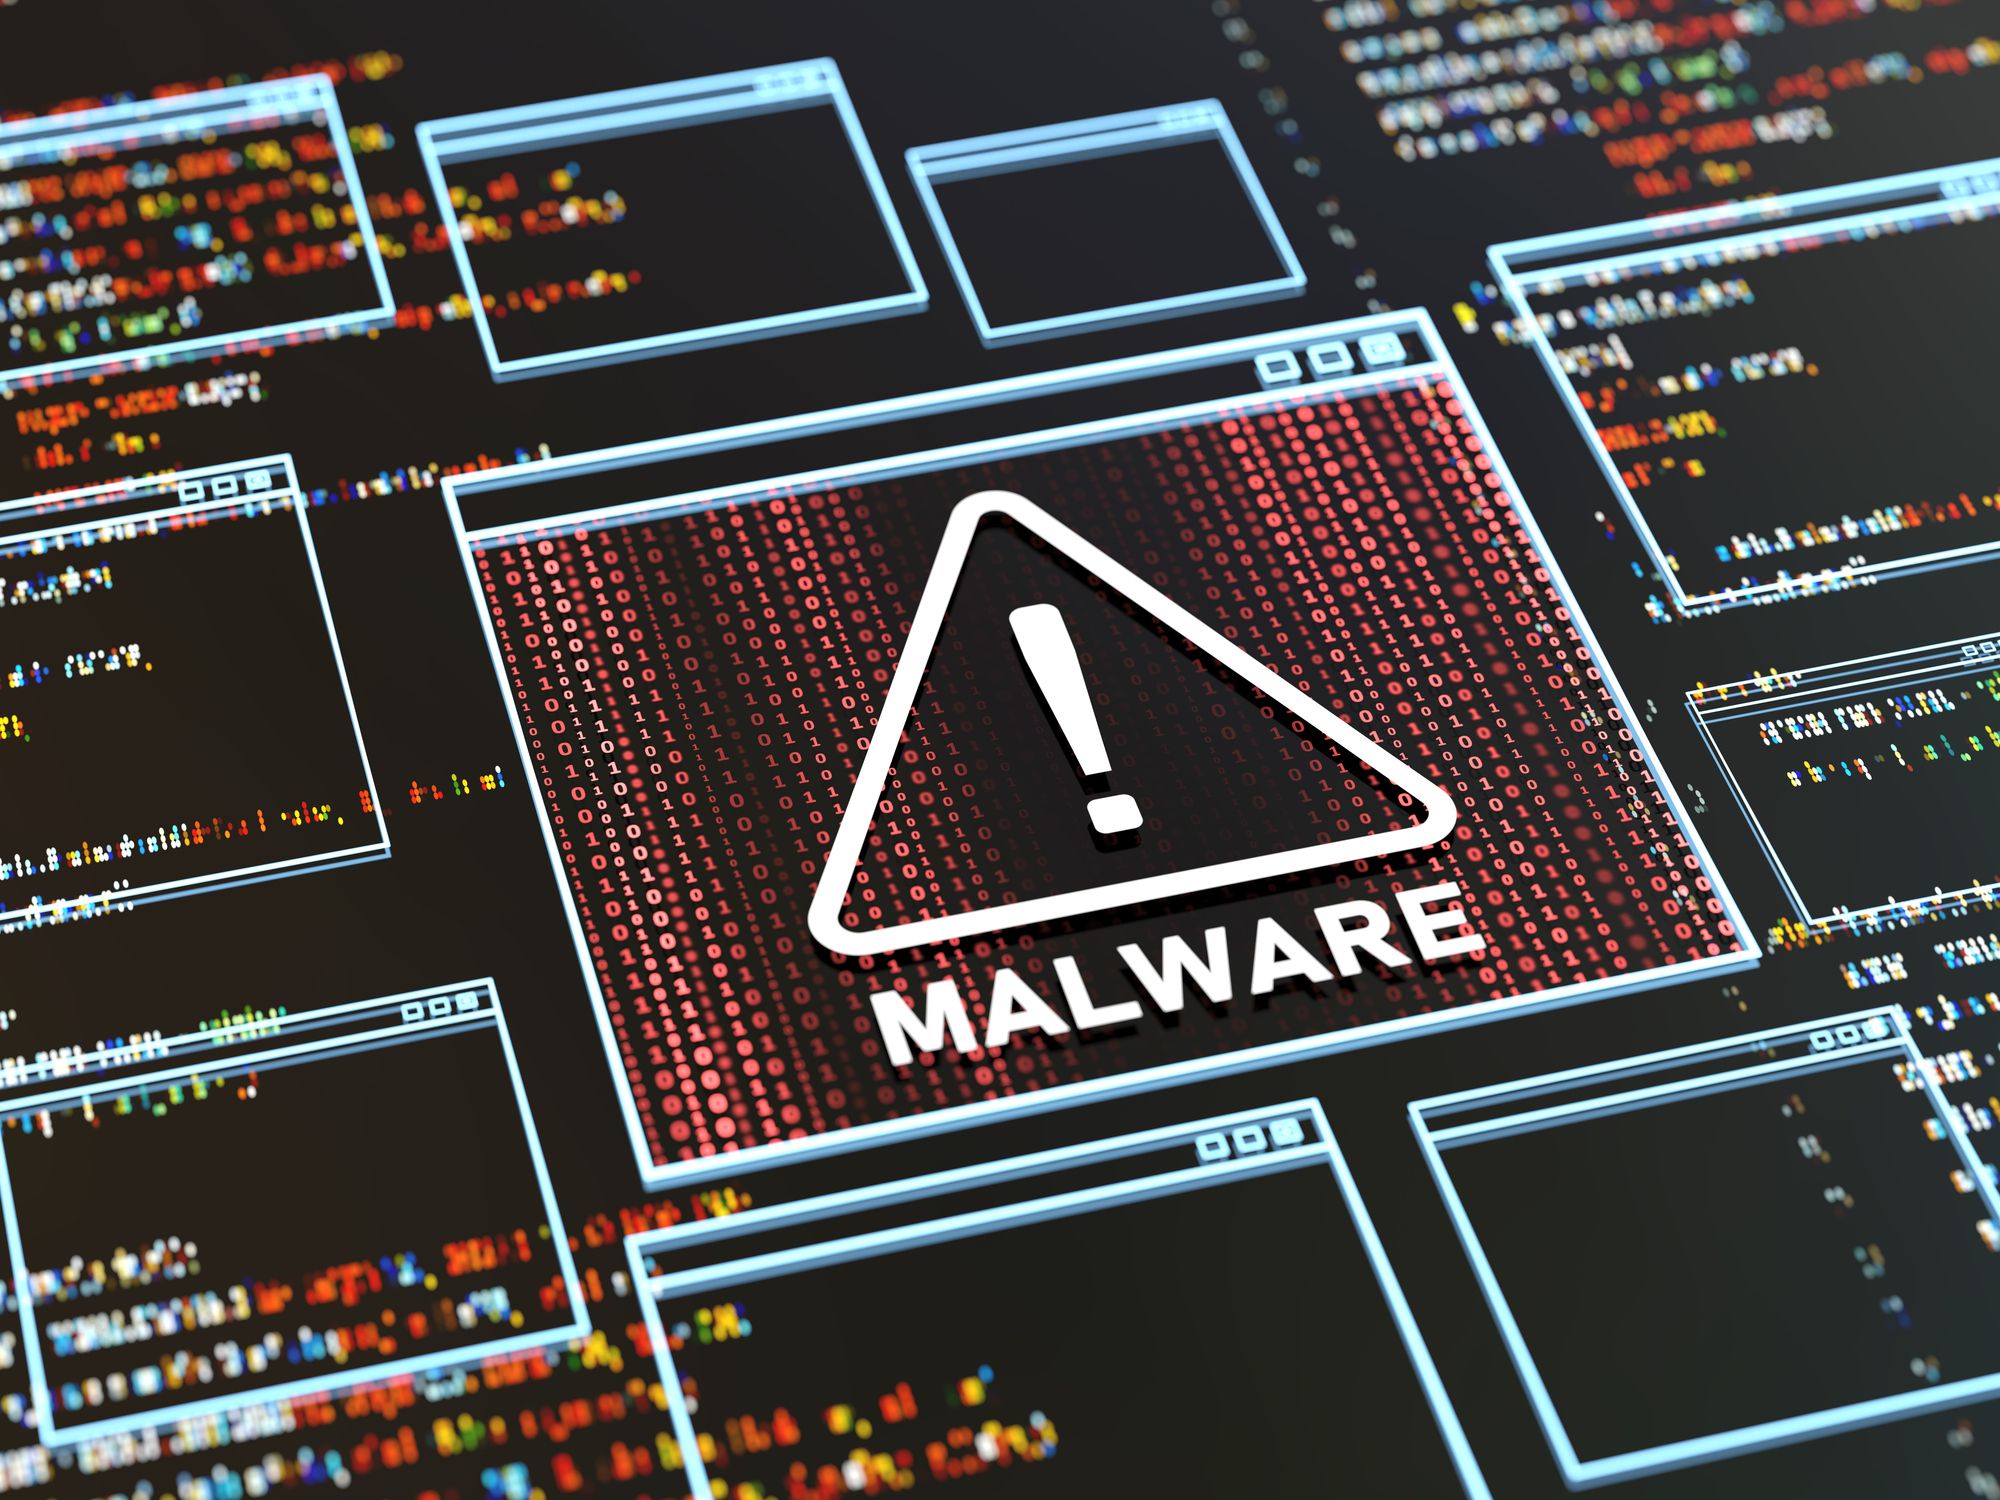 Brasil é o quarto país do mundo com o maior número de malwares detectados, revela relatório